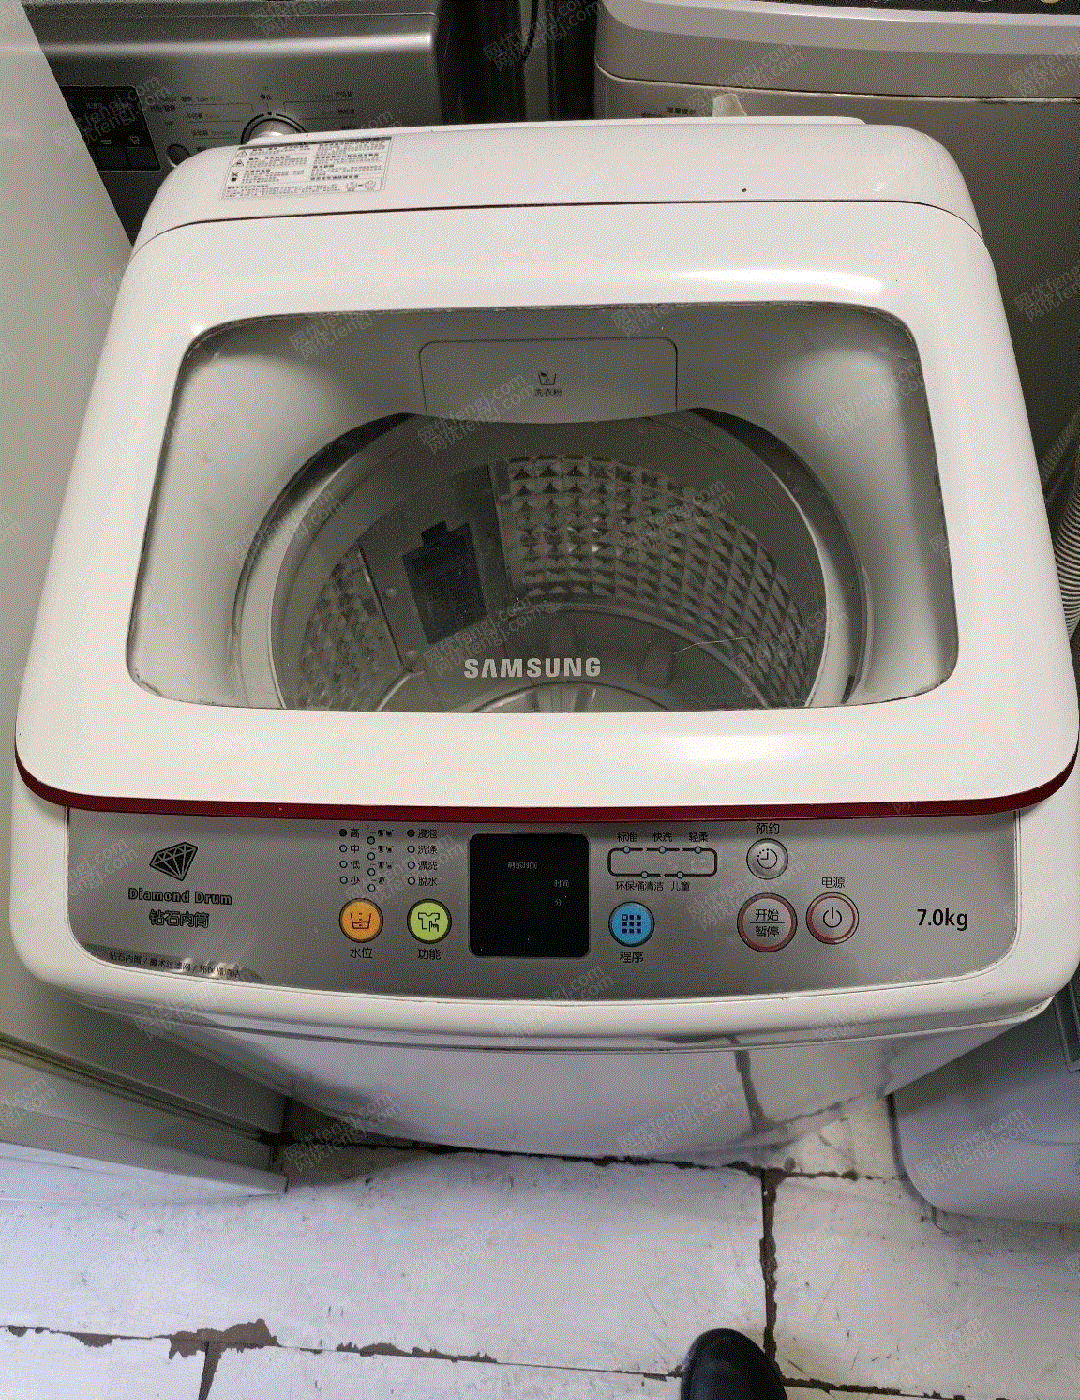 洗衣机出售